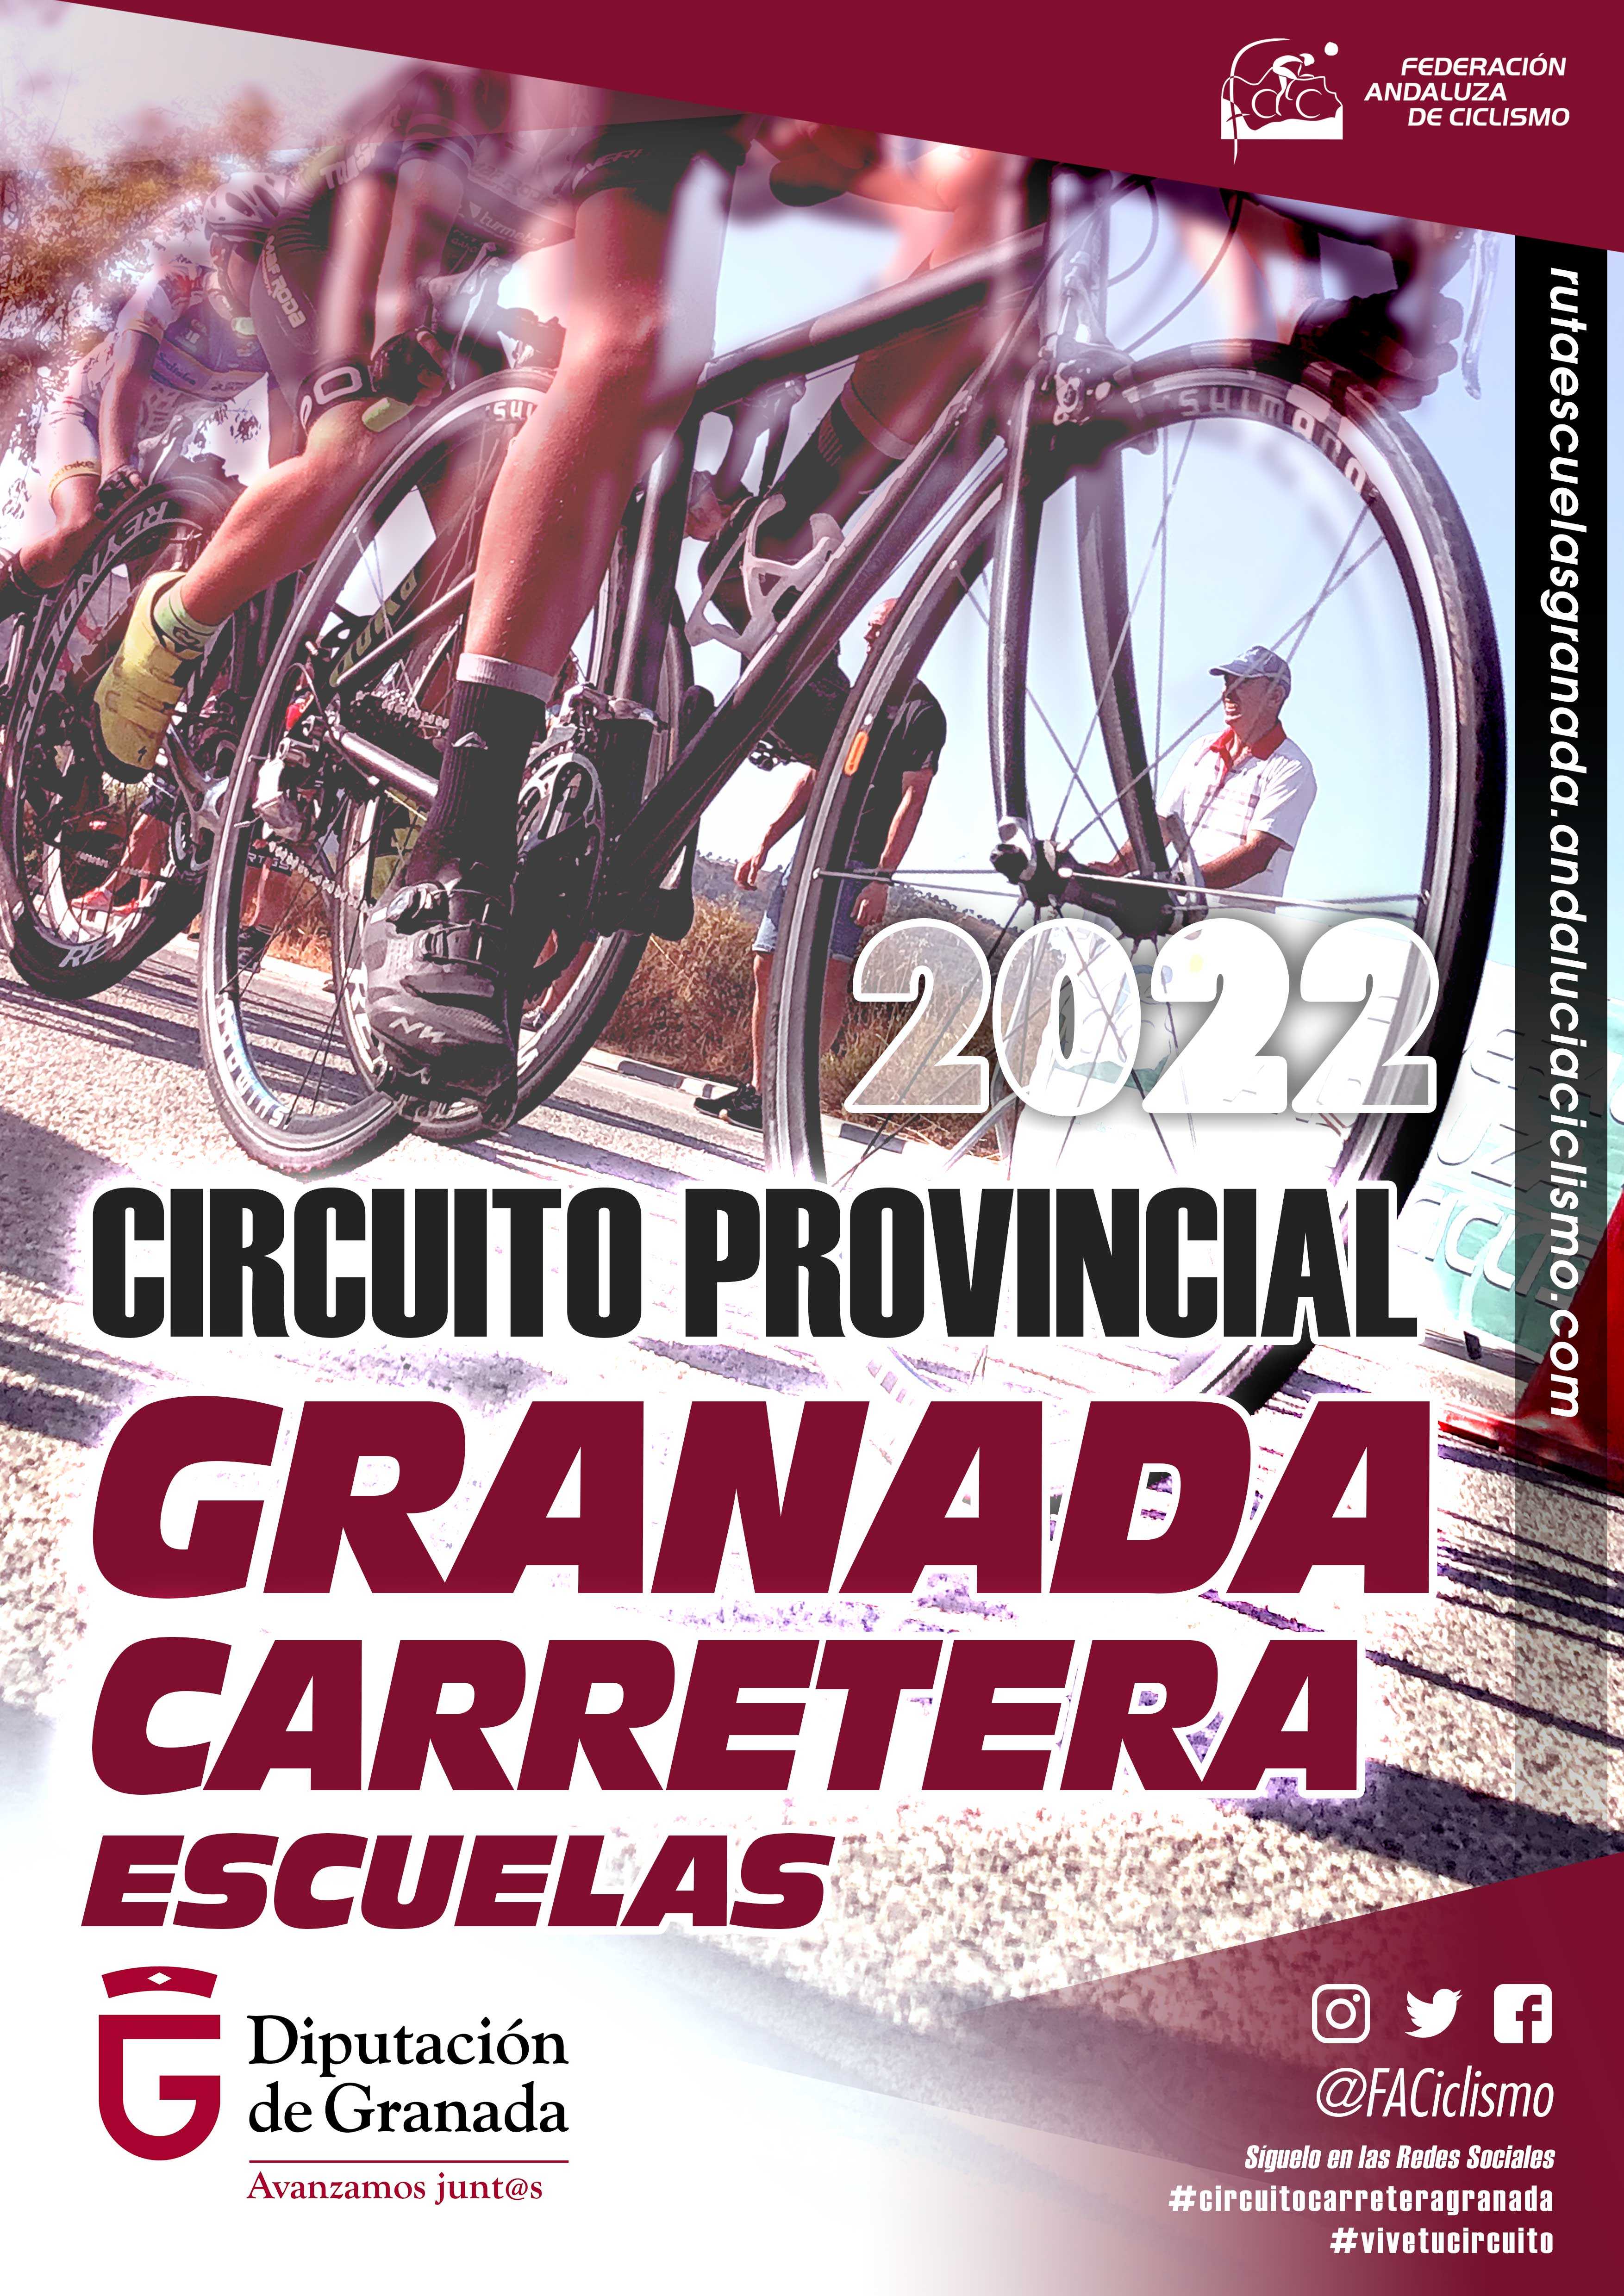 Fechas del Circuito Provincial de Granada Carretera 2022